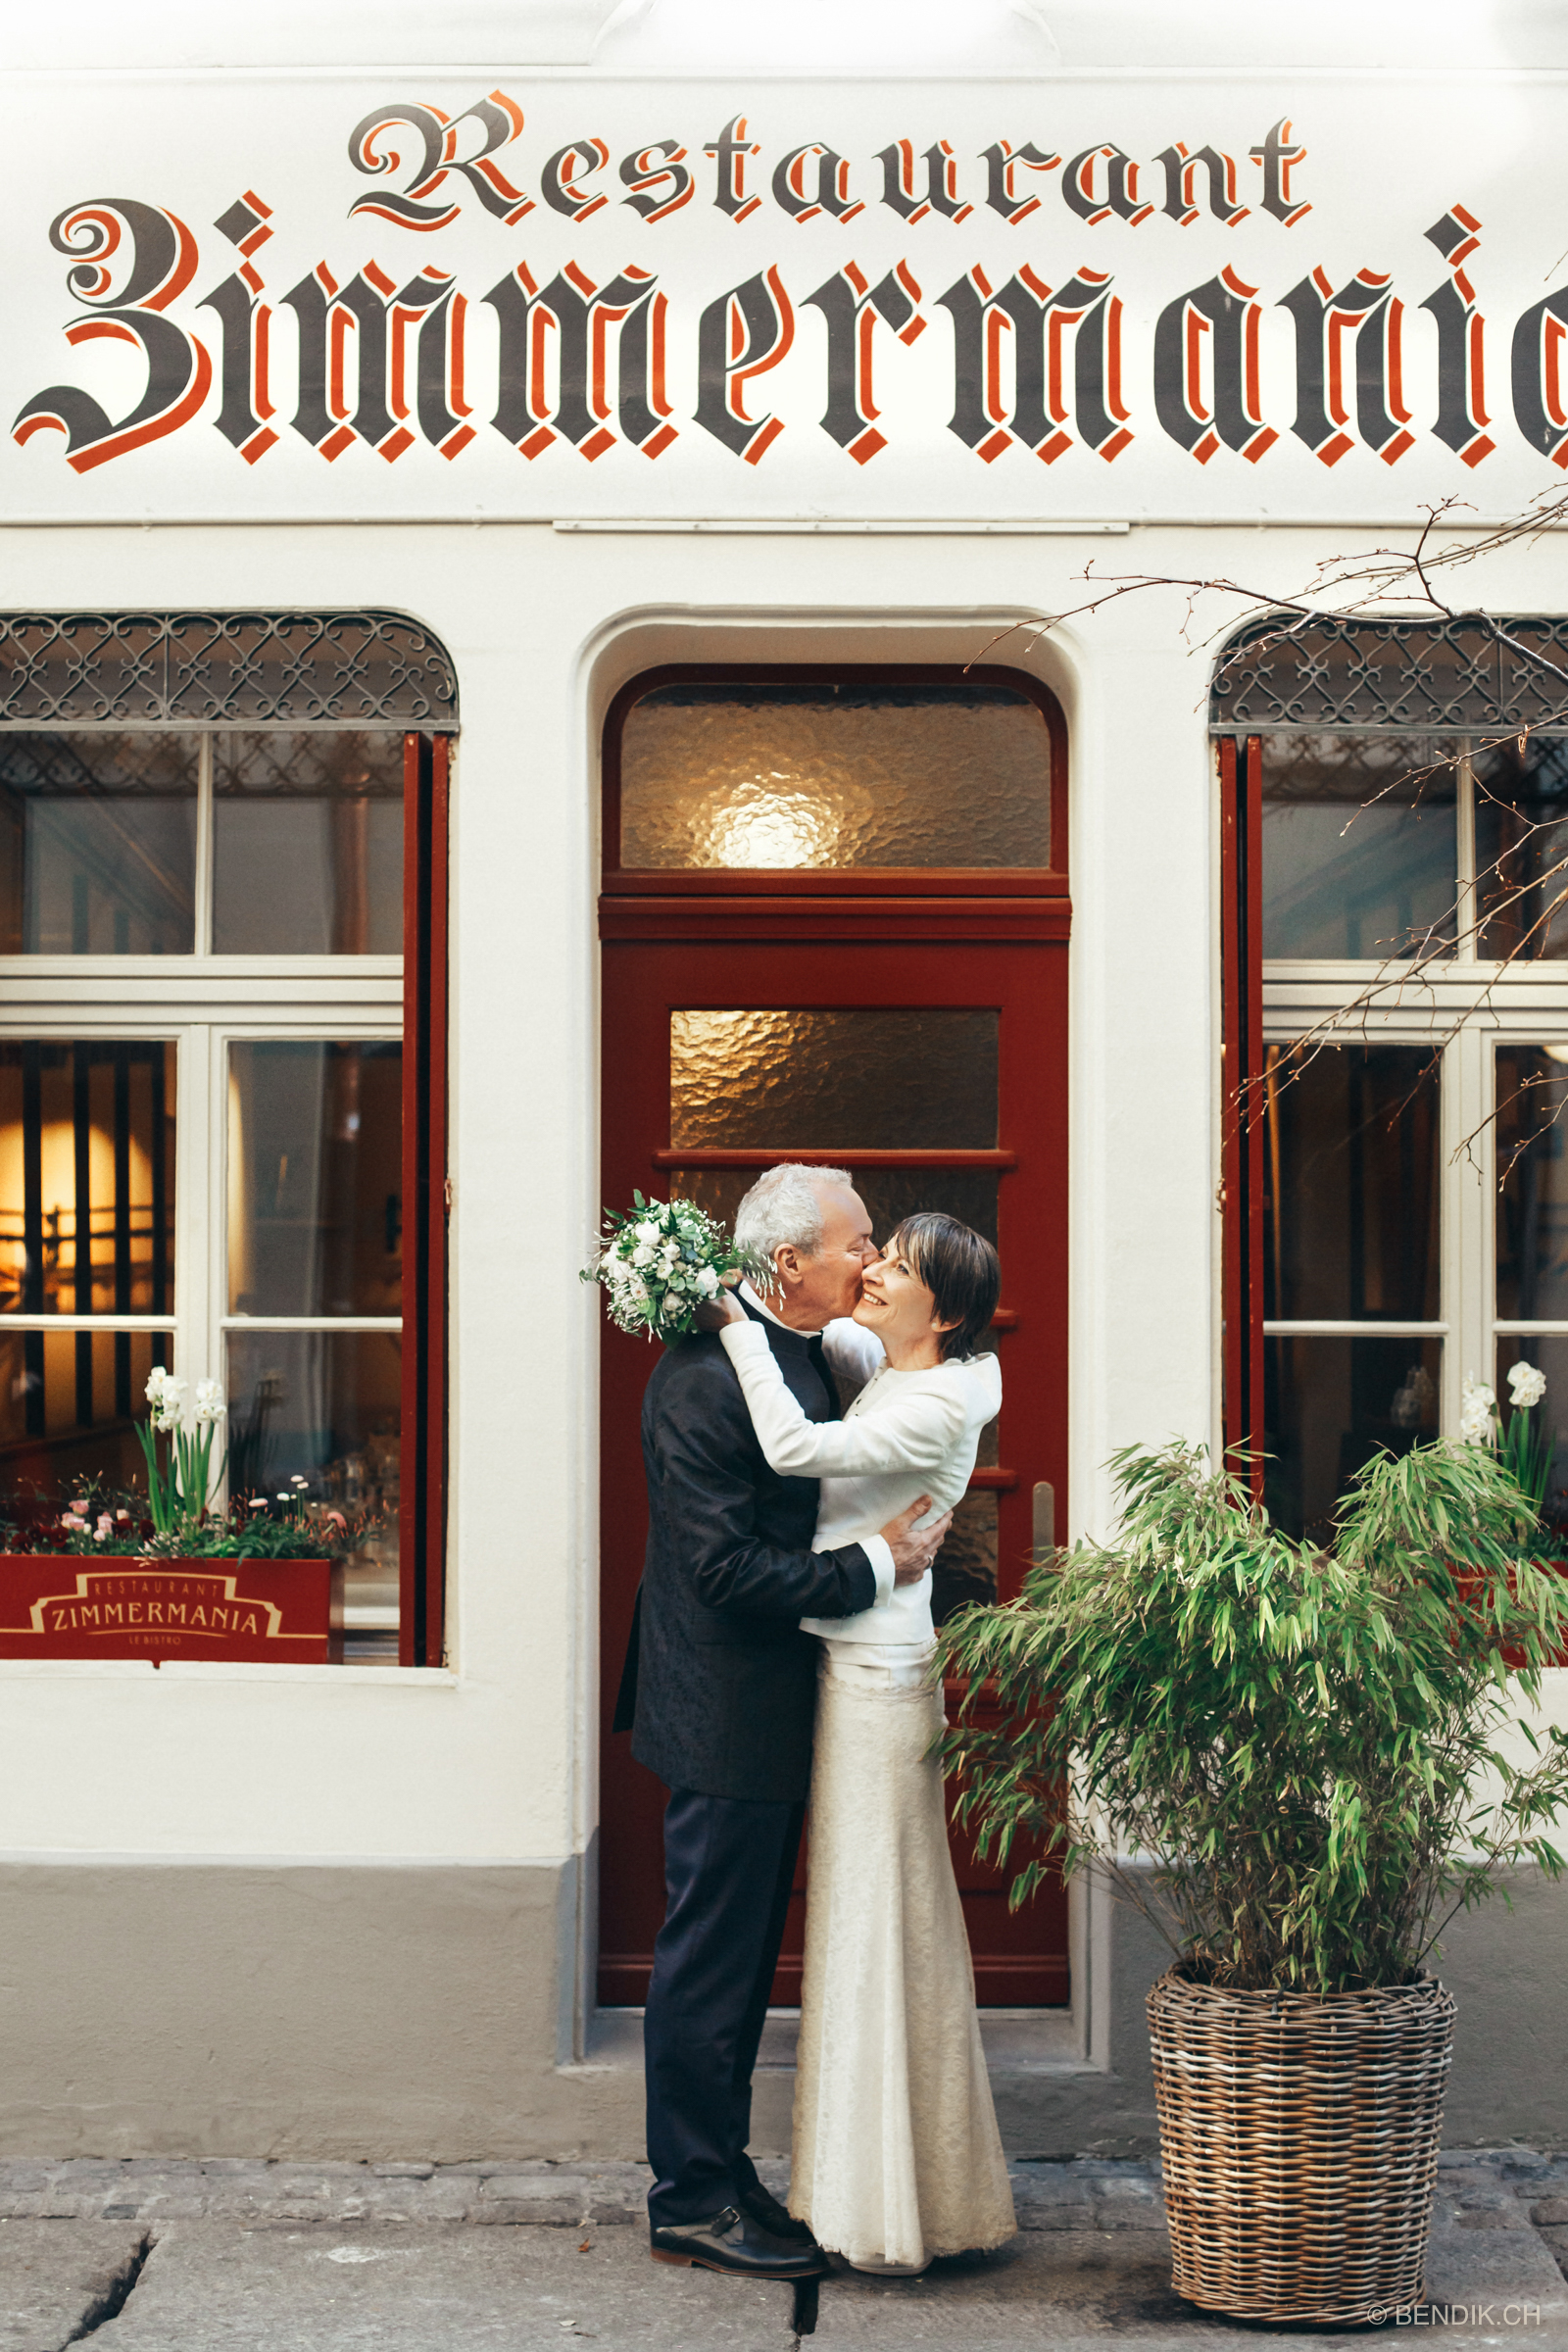 Brautpaar umarmt sich lachend vor Restaurant in Berner Innenstadt